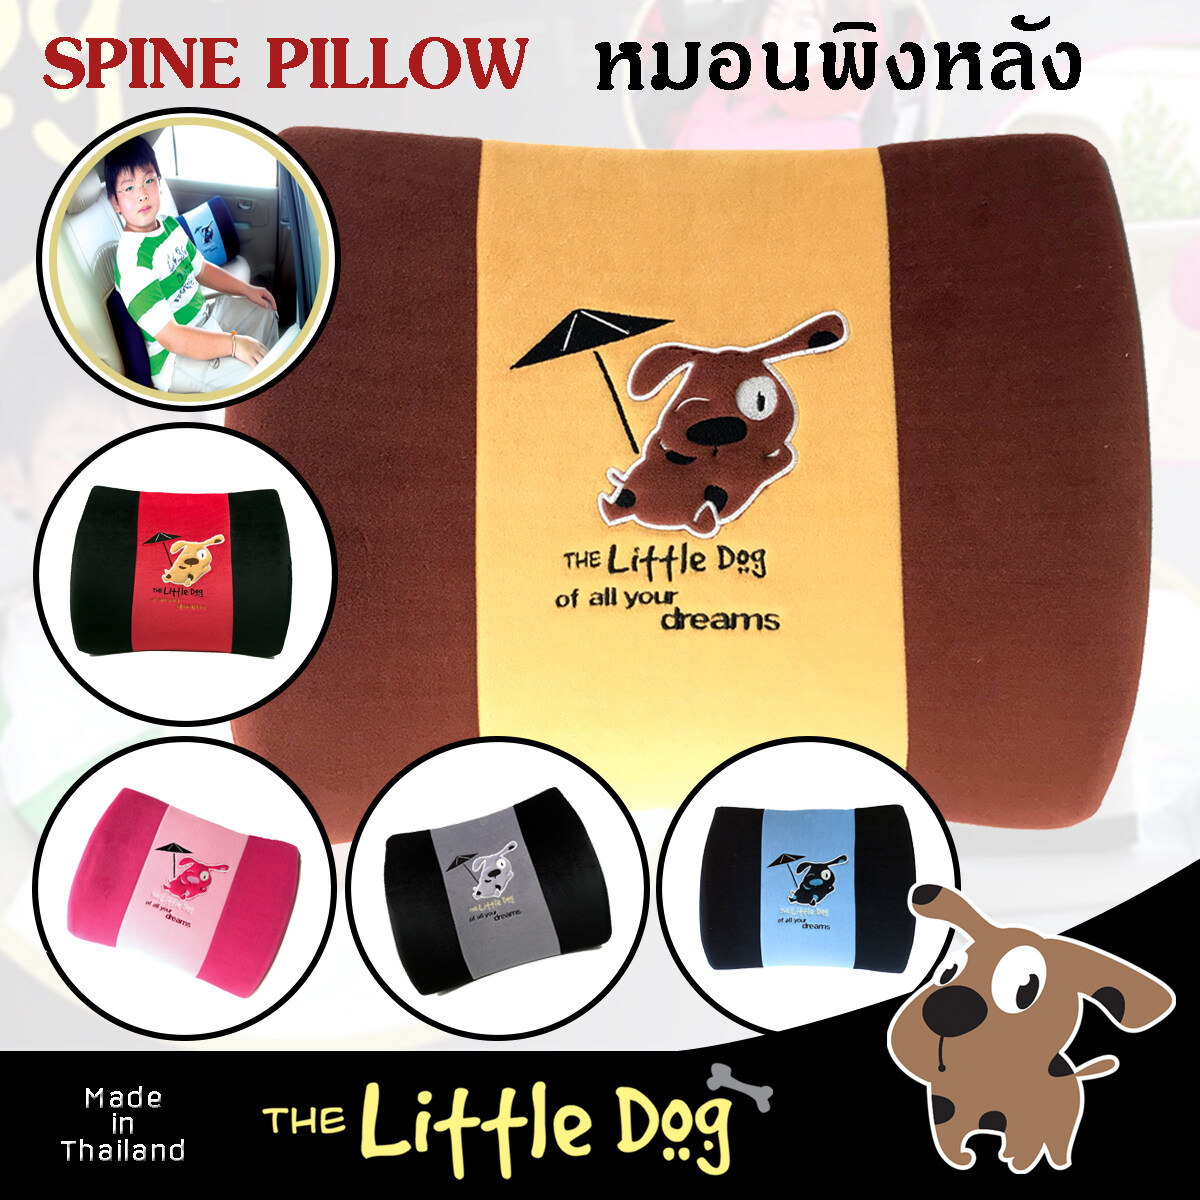 The Little Dog หมอนพิงหลัง Spine Pillow หมอนอิง ผ้าโพลีเอสเตอร์ Poly-Velour คุณภาพ เสริมฟองน้ำขึ้นรูป ลายการ์ตูน ผลิตในประเทศไทย